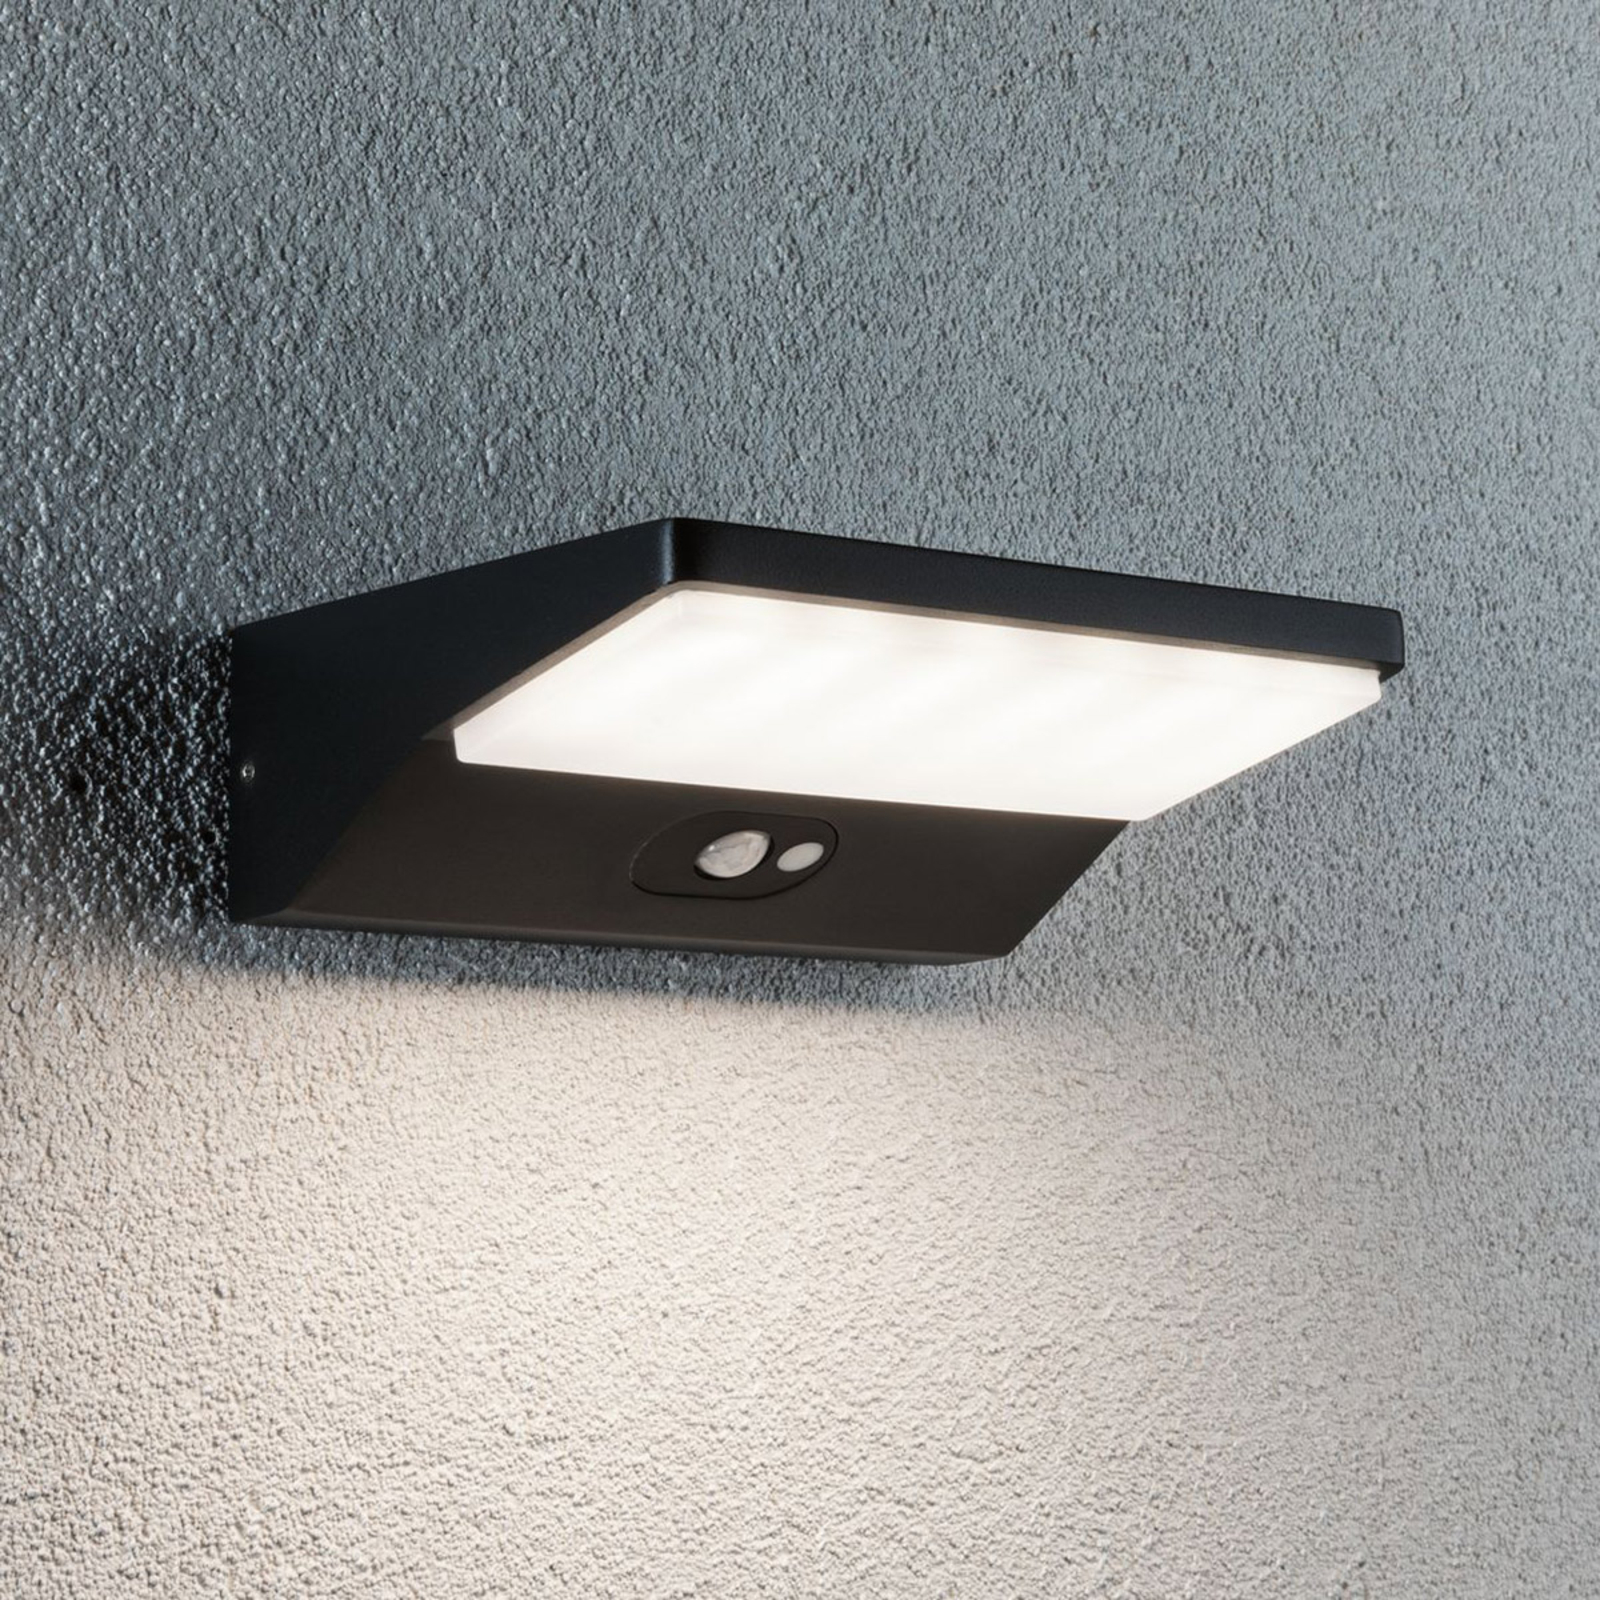 In tegenspraak Krijt rotatie Paulmann House LED wandlamp, sensor diepte 15 cm | Lampen24.nl